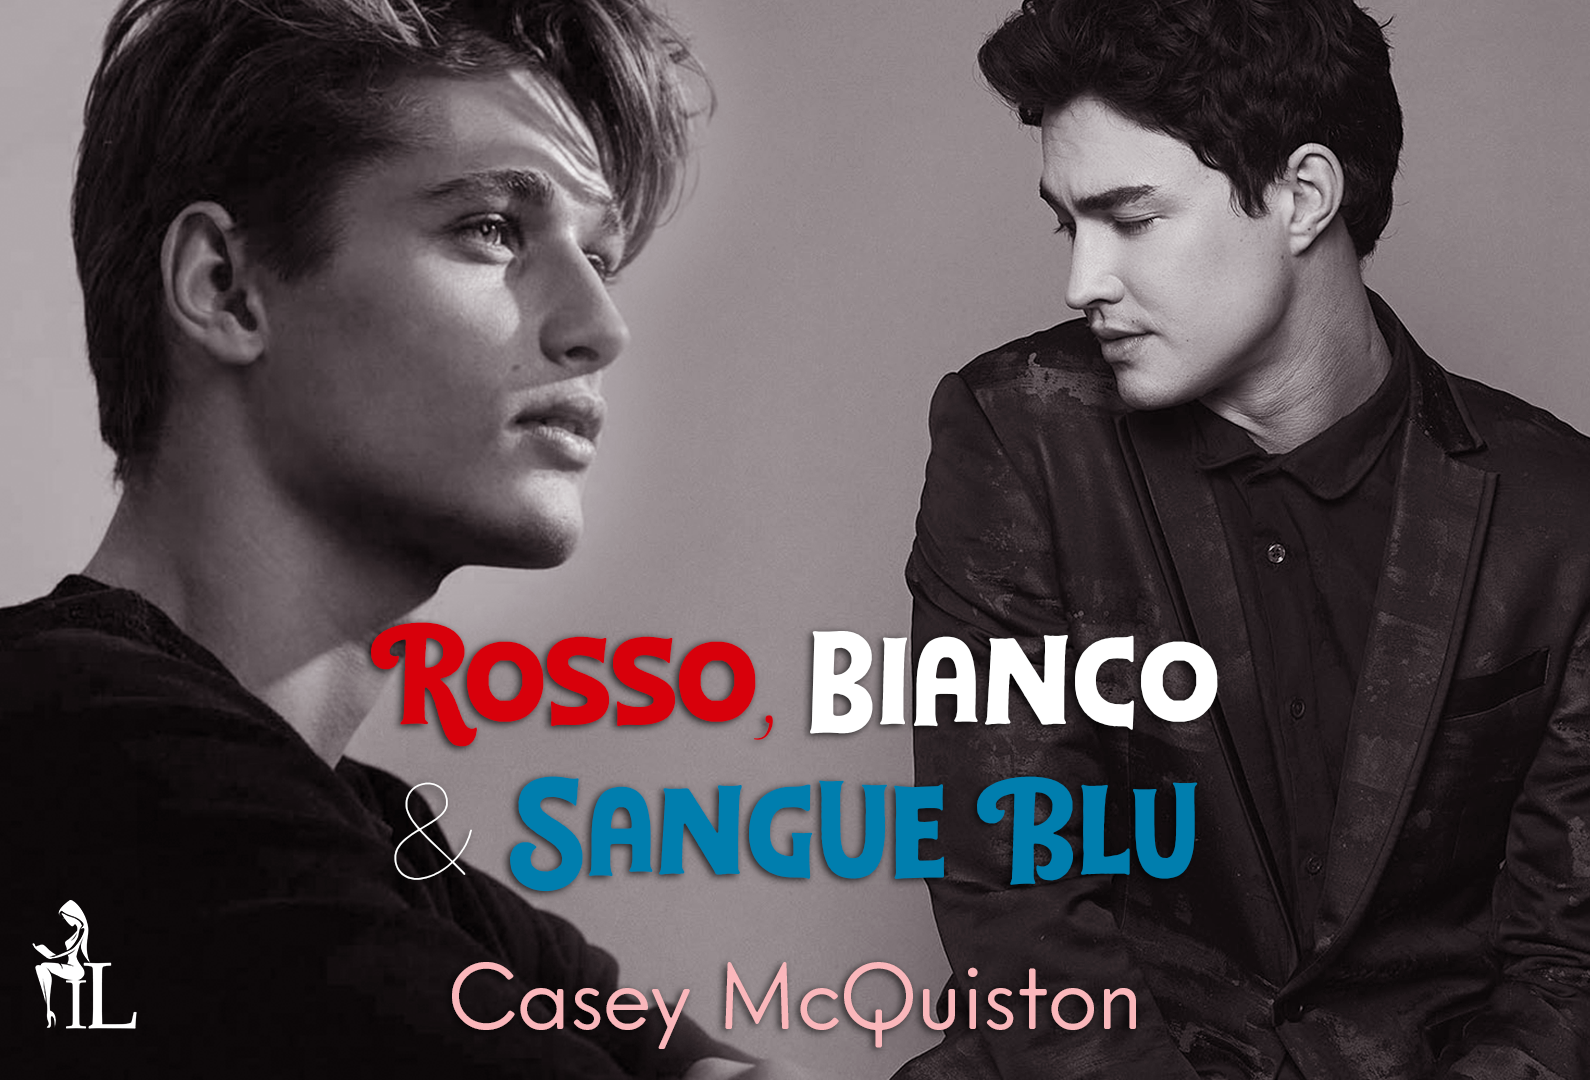 Insaziabili Letture: Recensione: ROSSO, BIANCO & SANGUE BLU di Casey  McQuiston.